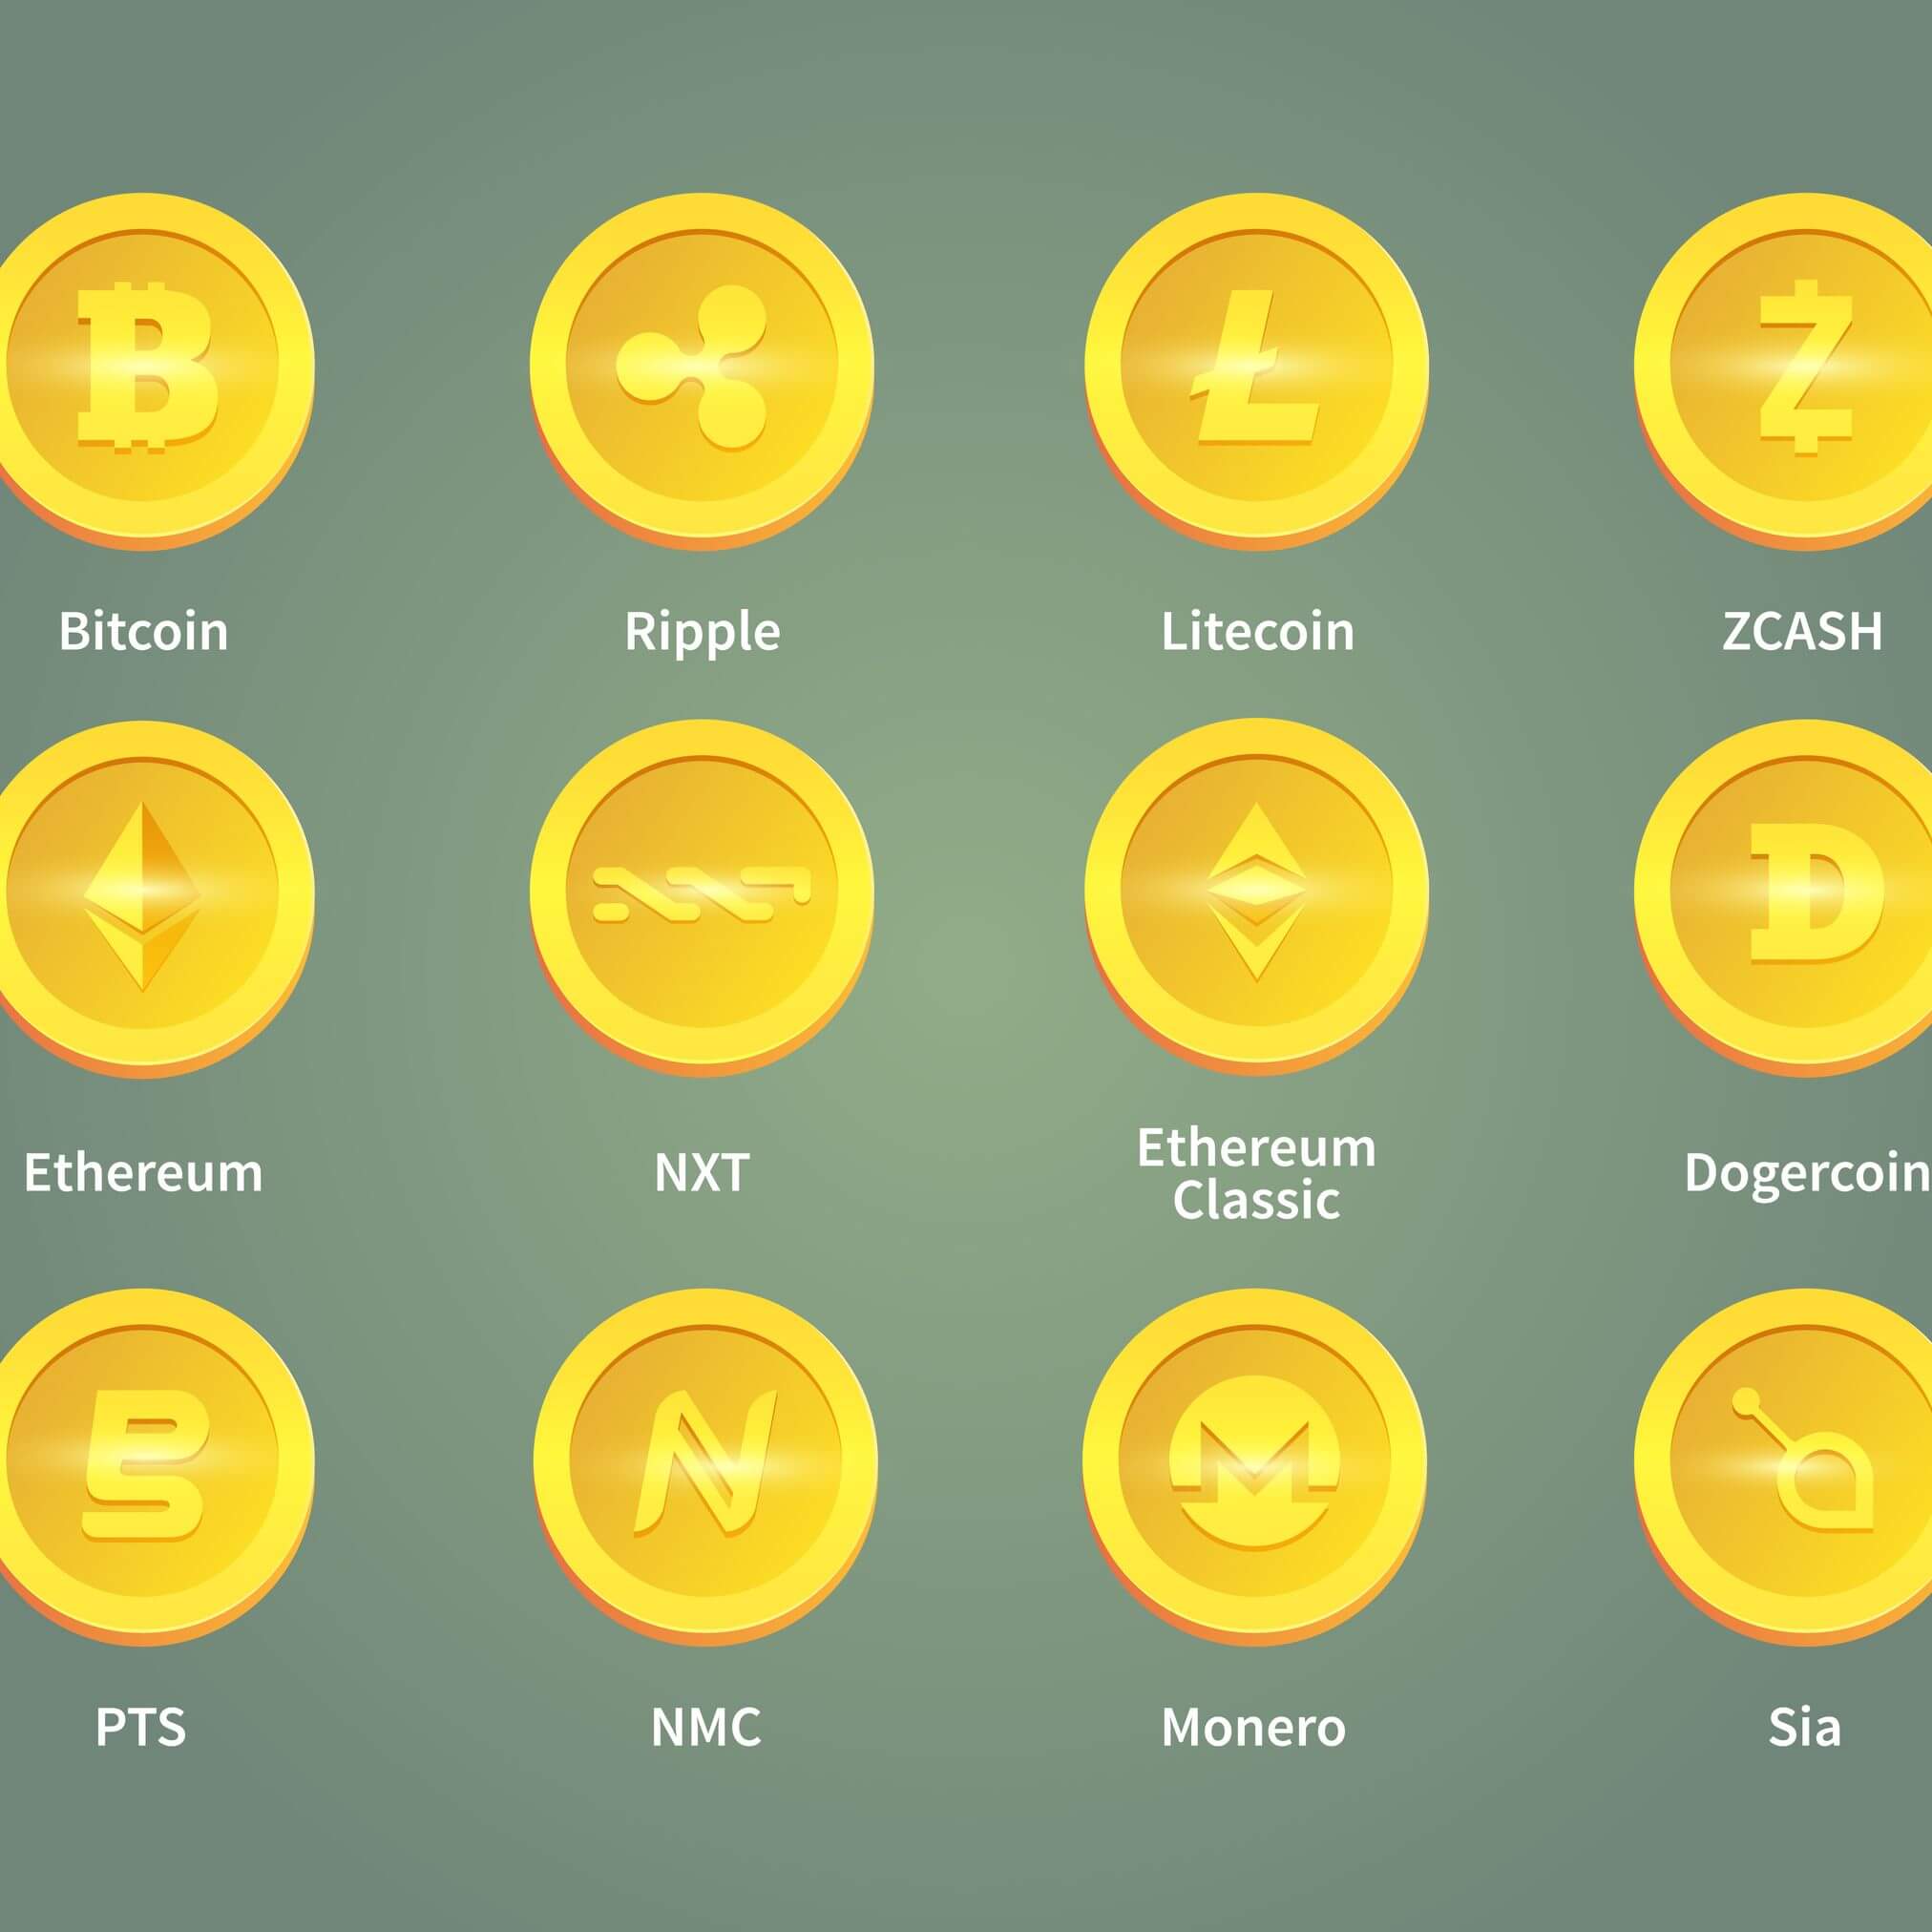 piattaforma di trading btc migliore bitcoin atm